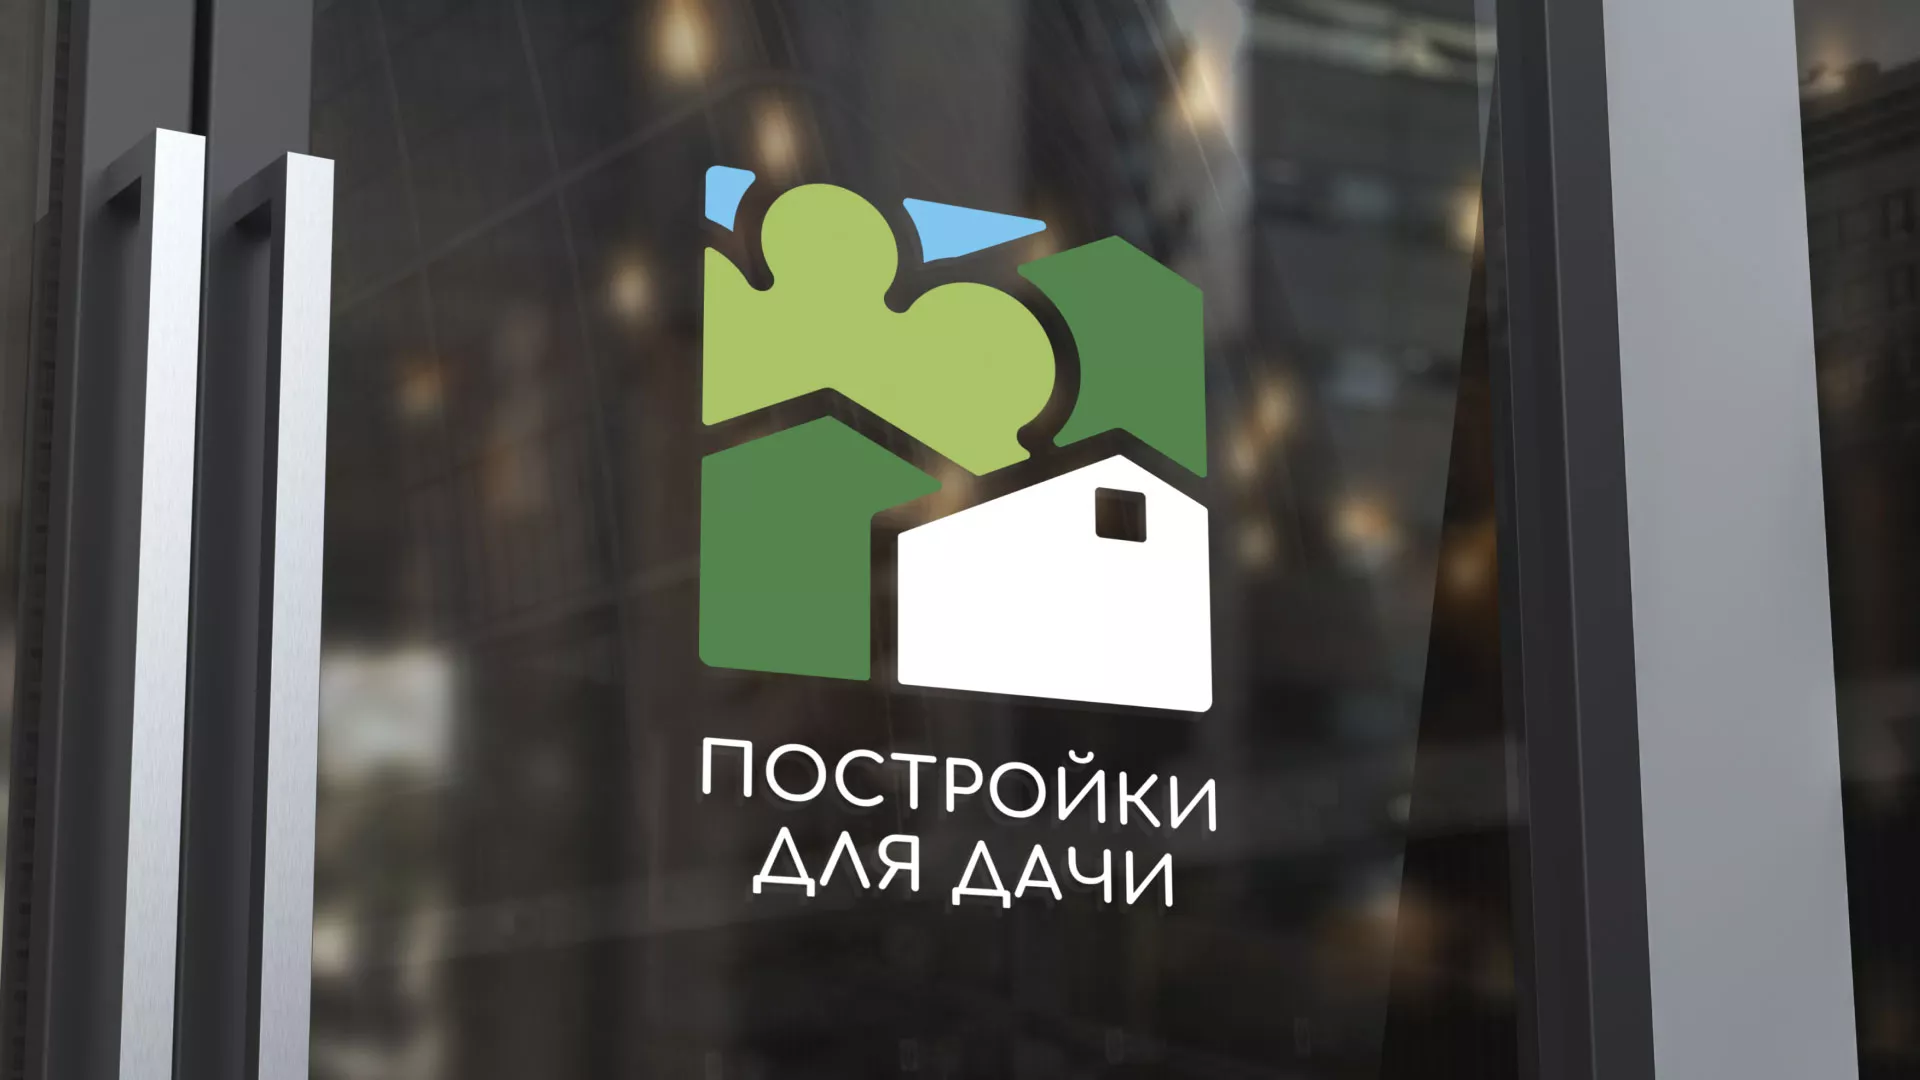 Разработка логотипа в Комсомольске-на-Амуре для компании «Постройки для дачи»